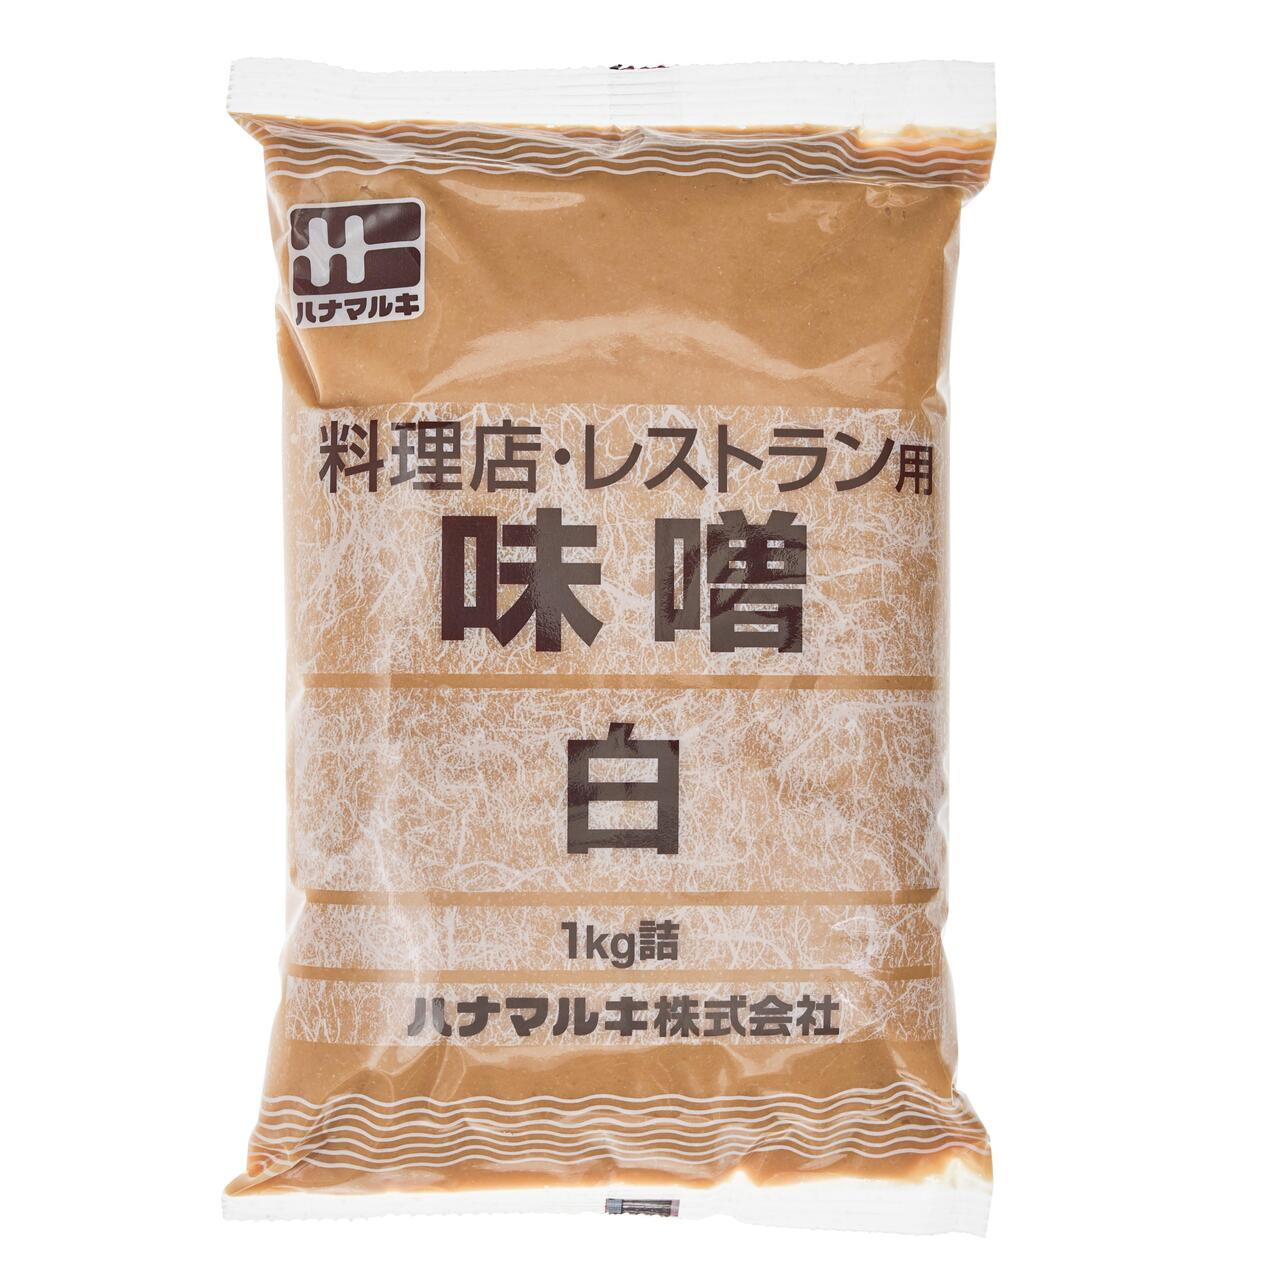 White Miso Paste 2.2 lbs – Marukome